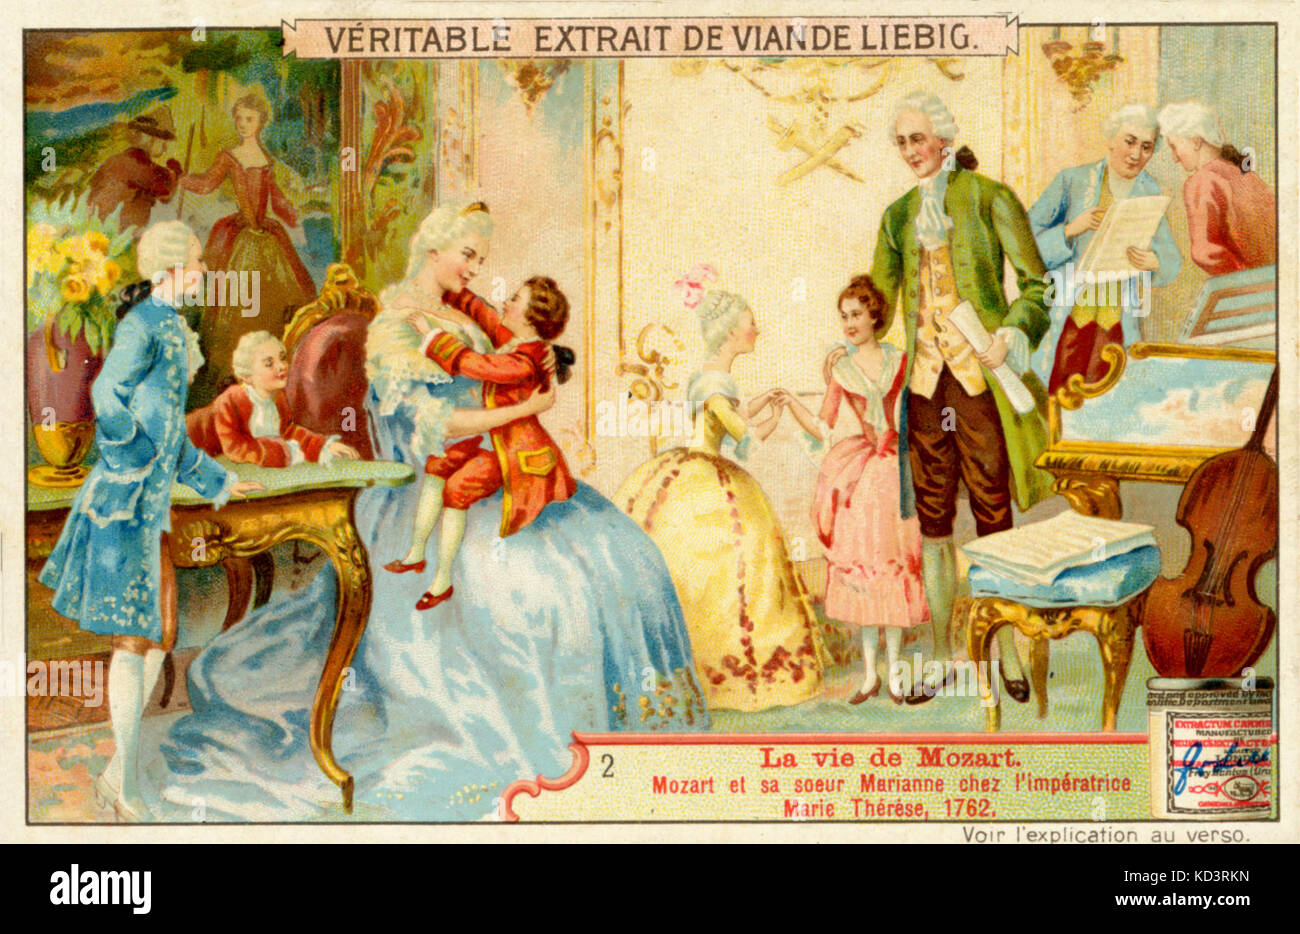 MOZART giovane Wolfgang Amadeus nel 1762, con la sorella, Marianne, presso la corte dell'Imperatrice Maria Teresa. Stampa da Viande Liebig annuncio. Il compositore austriaco,1756-1791 Foto Stock